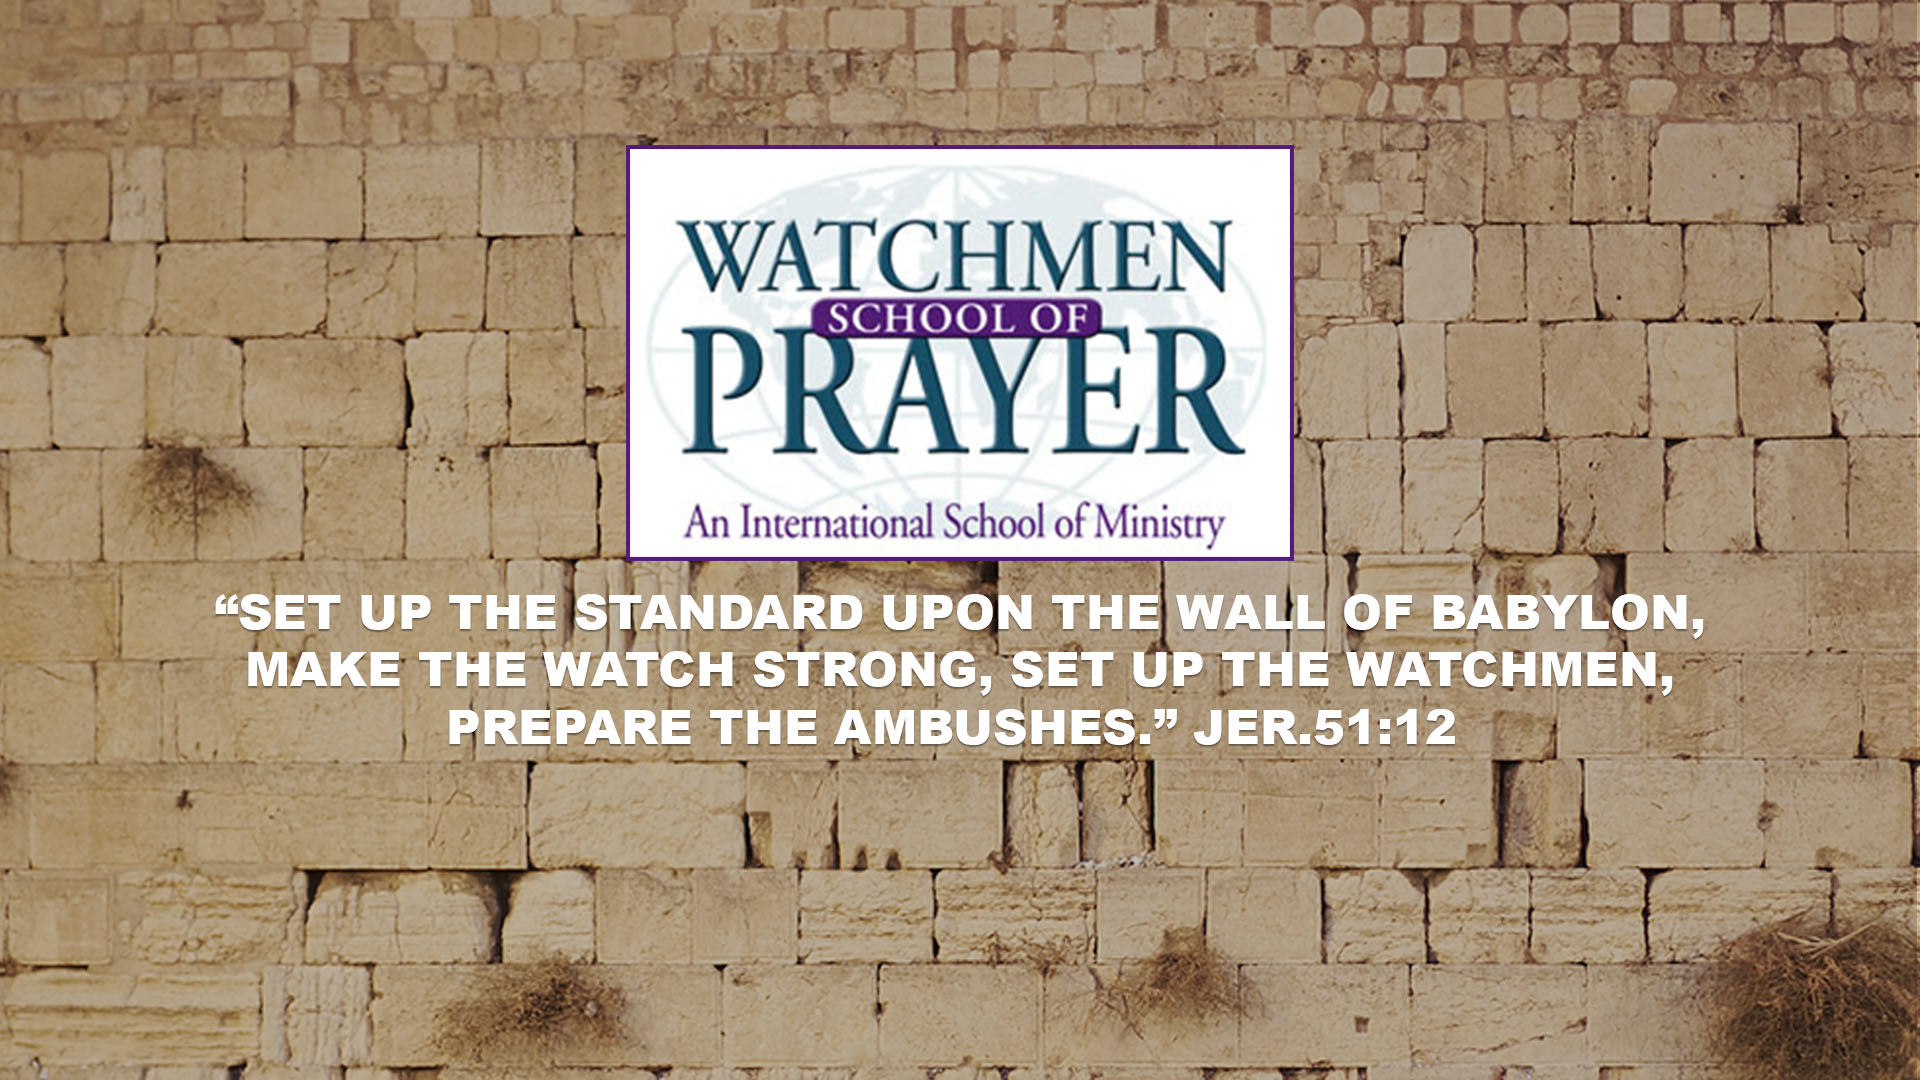 Watchmen School of Prayer